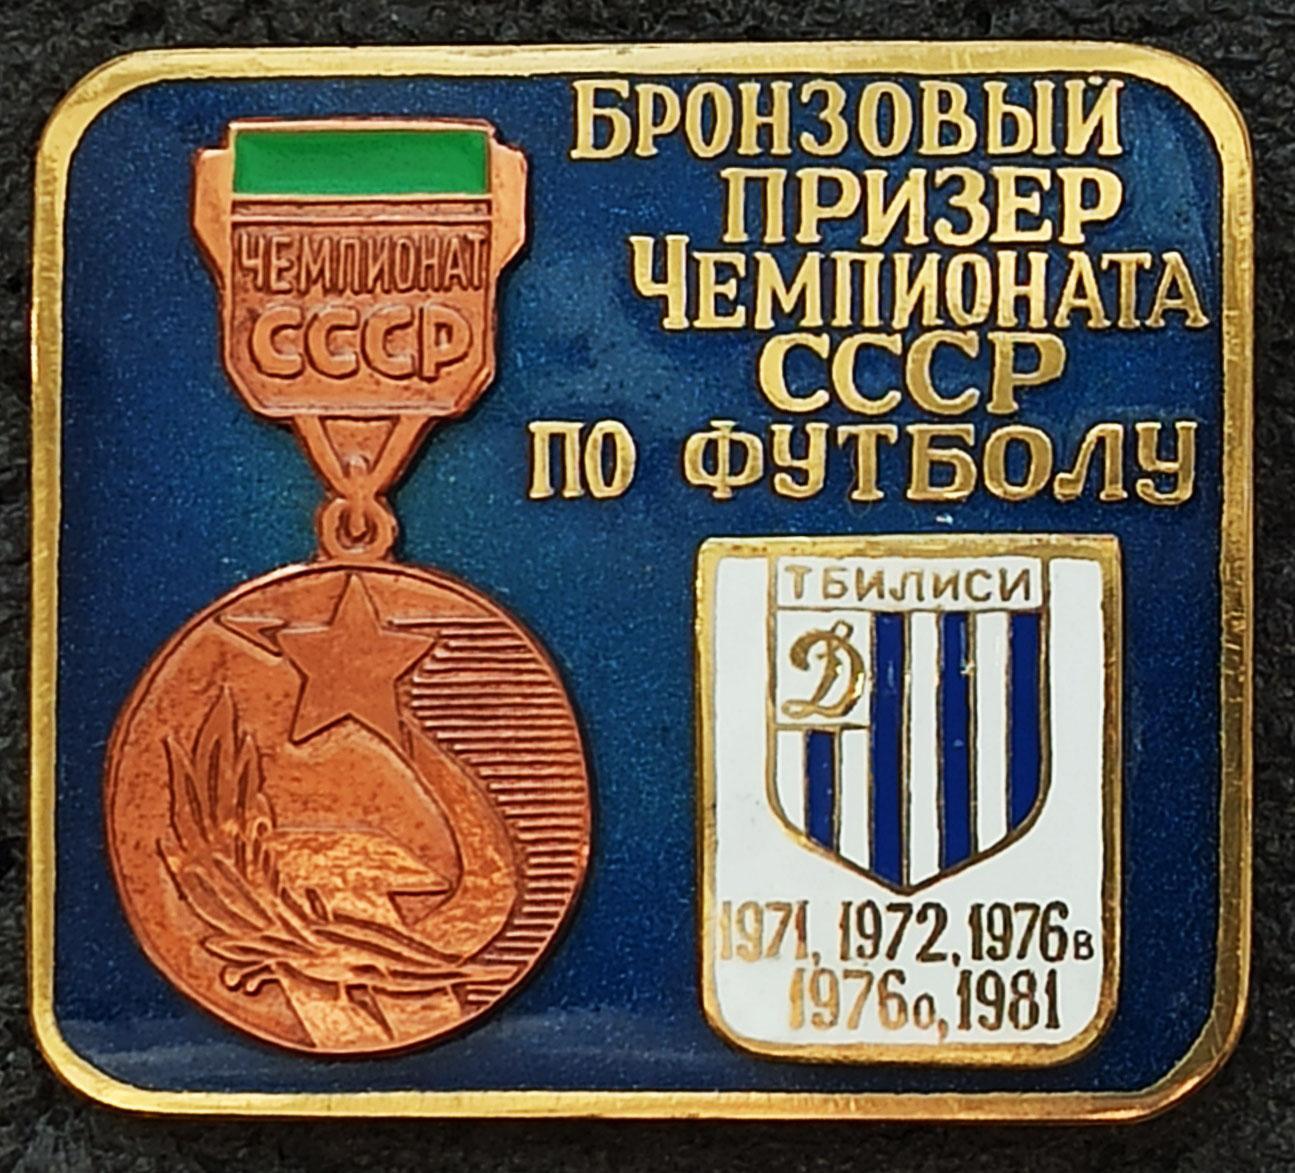 Значoк Знак ФК Динамо Тбилиси Грузия Бронзовый призер СССР 1971 72 76 1981